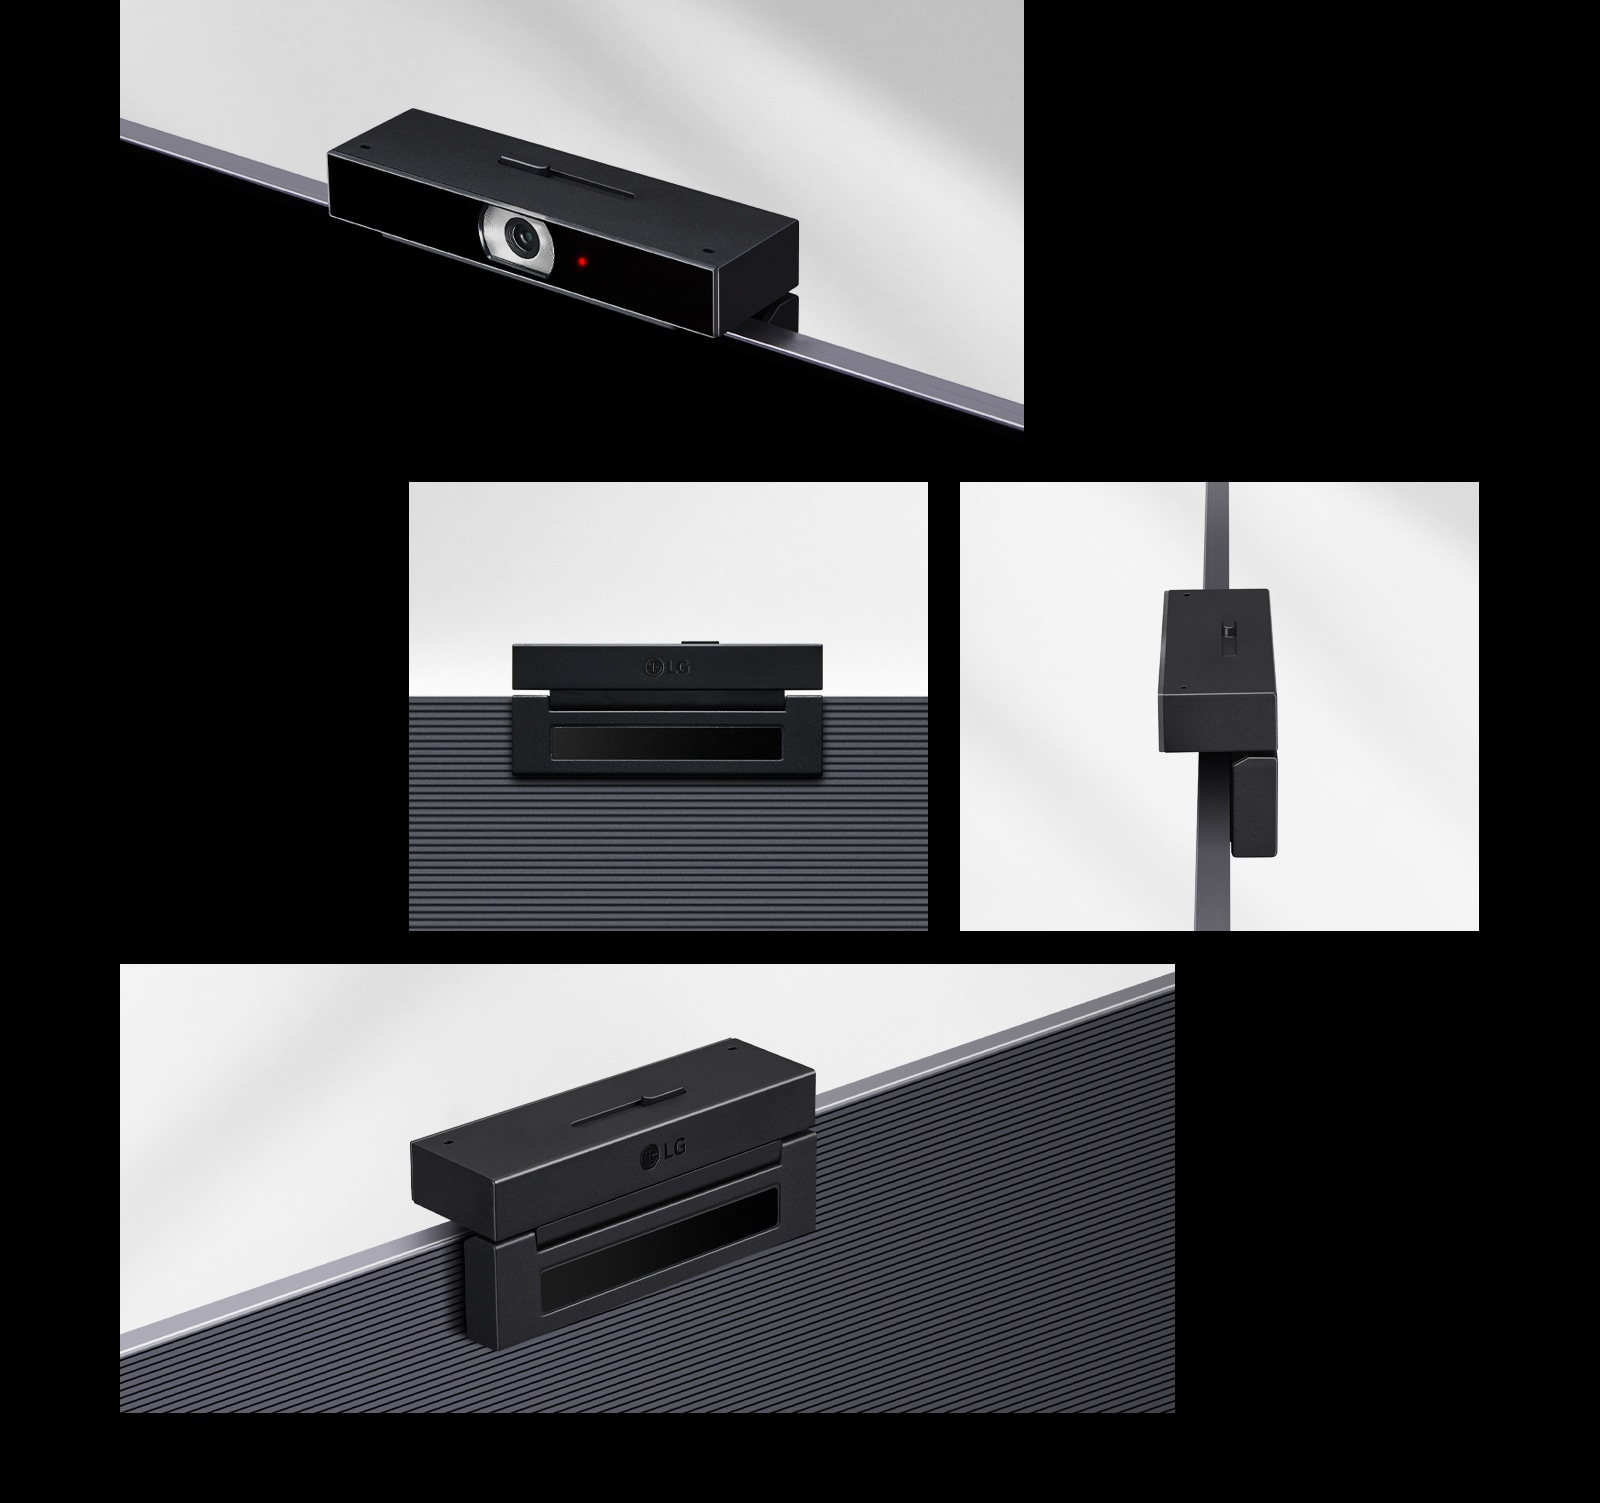 Có tổng cộng bốn hình ảnh của các sản phẩm LG Smart Cam. Hình trên cùng hiển thị hình ảnh của máy ảnh ở trạng thái mở, trong khi hình ở giữa hiển thị mặt sau và mặt bên cạnh nhau. Hình dưới cùng hiển thị mặt sau của sản phẩm từ một góc bên.